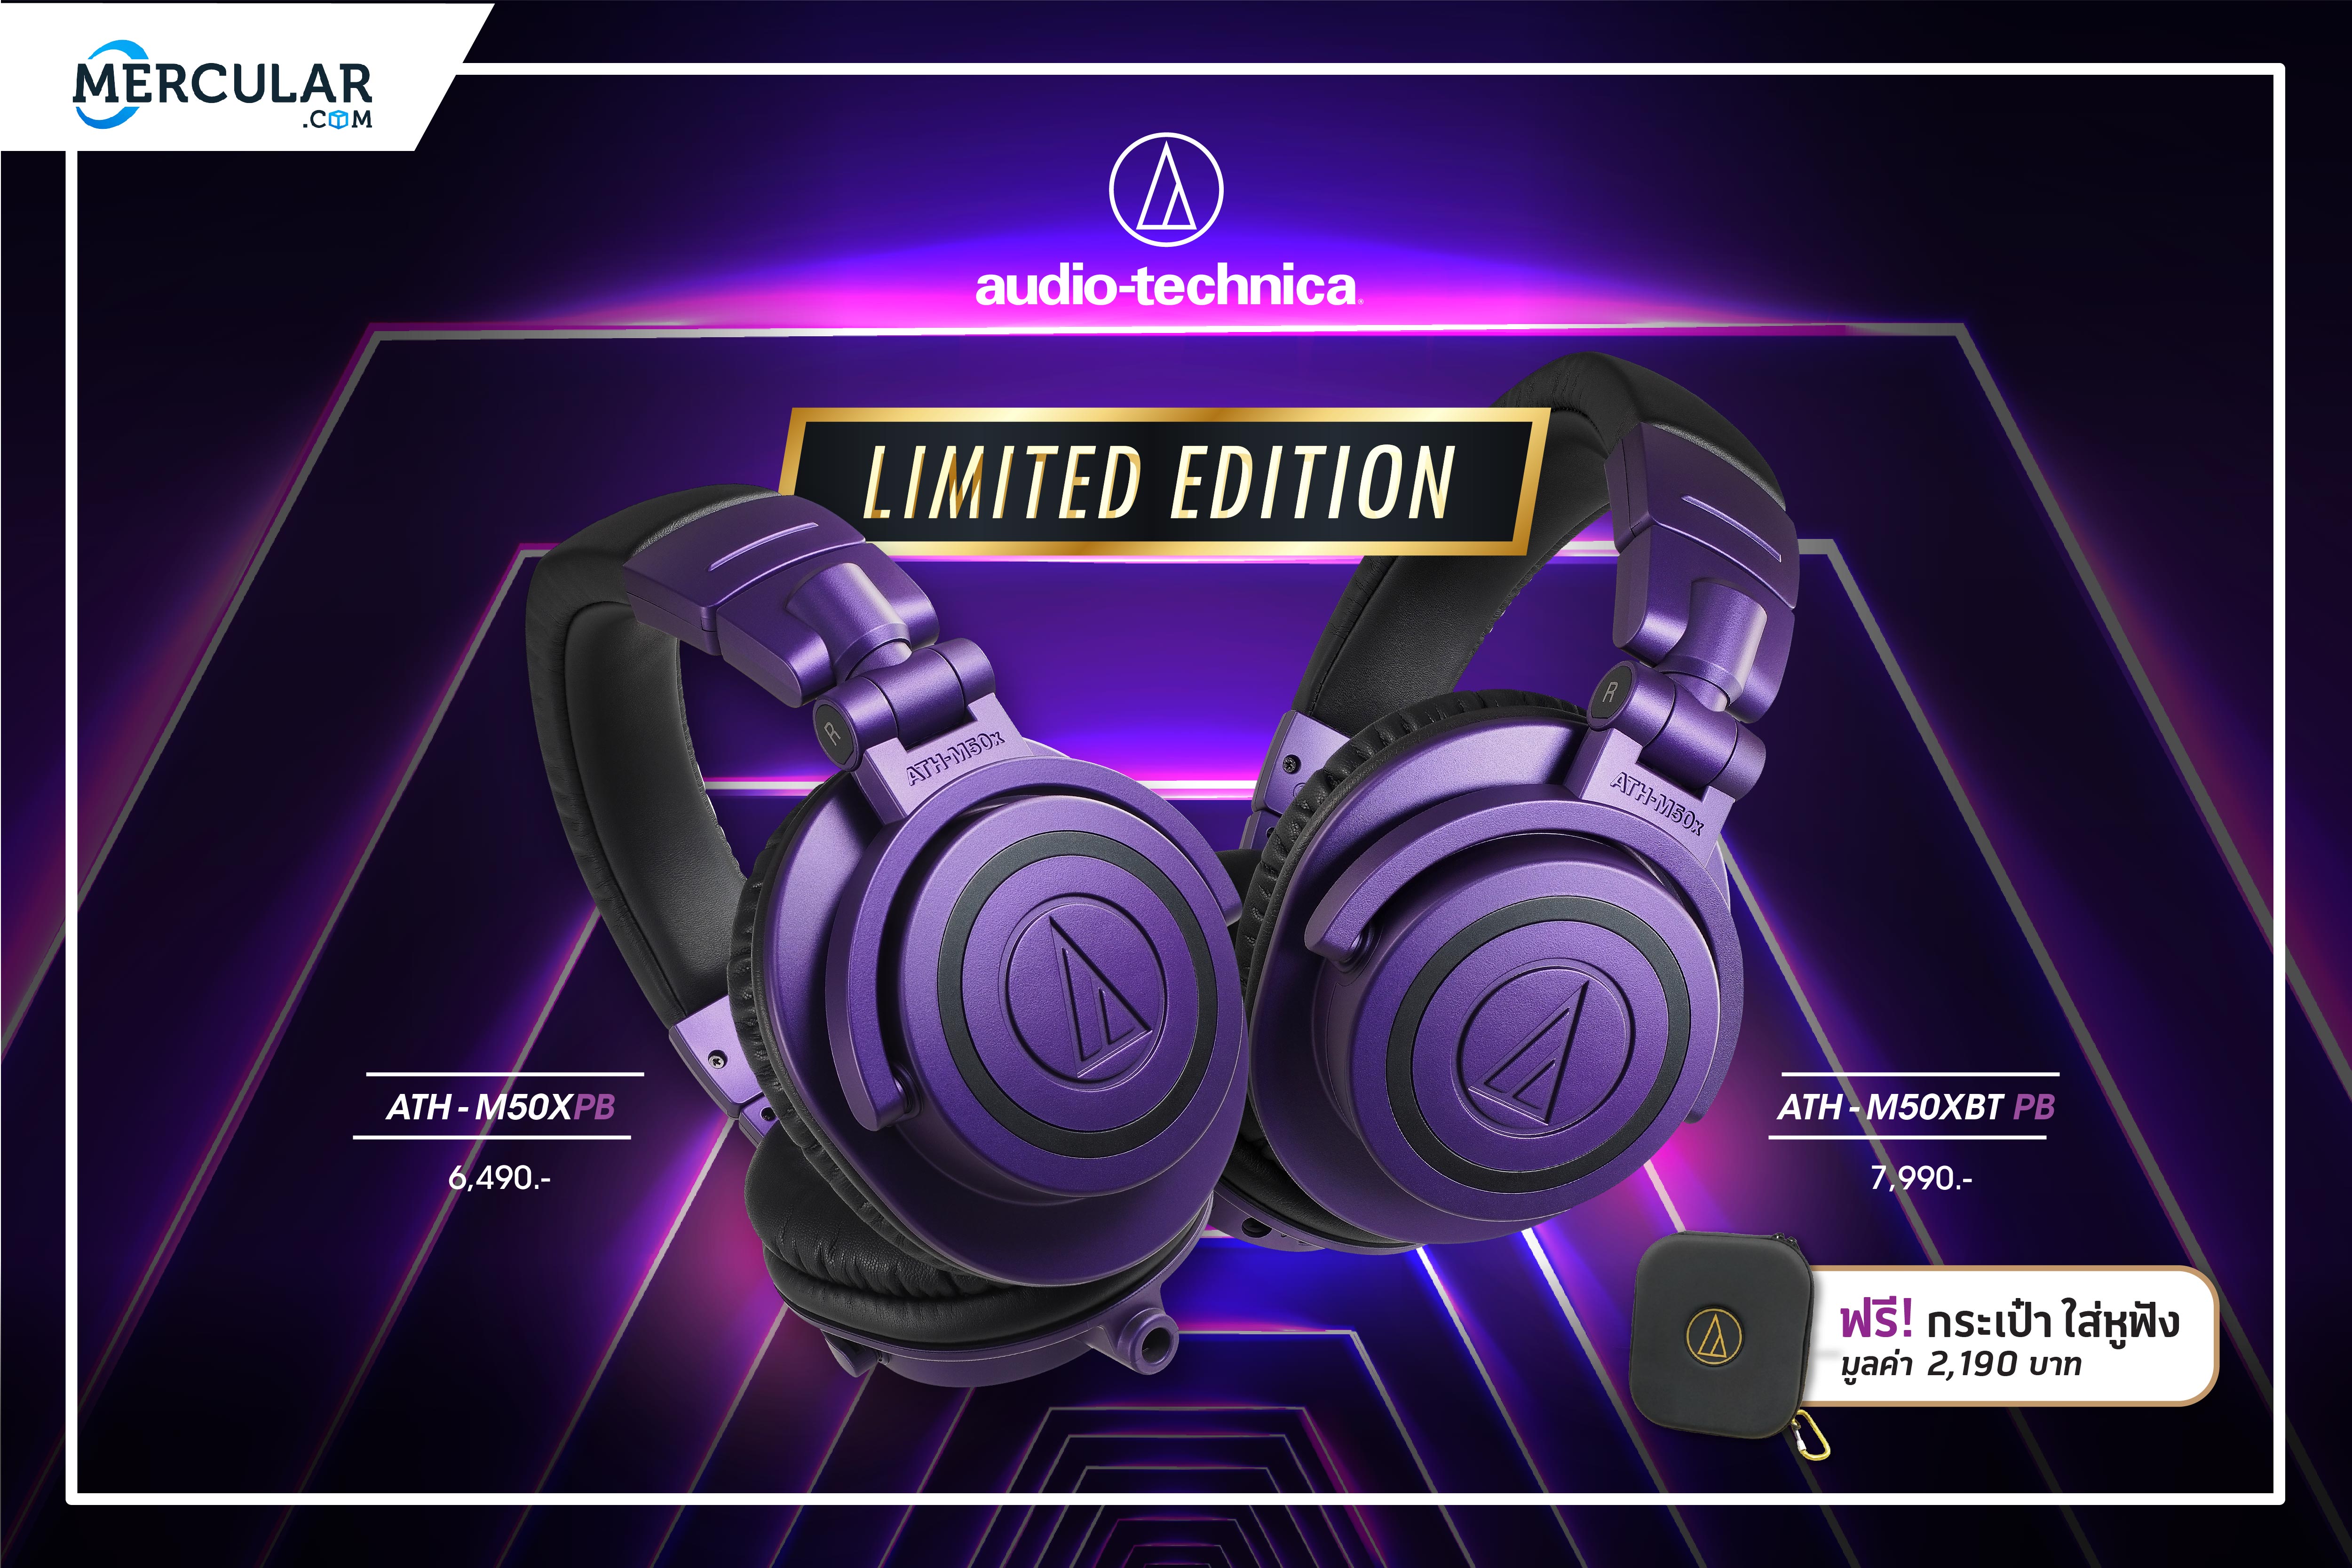 อาร์ทีบีฯ อวดโฉมหูฟัง ATH-M50xBT Purple Black และ ATH-M50x Purple Black คอลเลคชั่นใหม่ Limited Edition ประจำปี 2020 จากแบรนด์ Audio-Technica